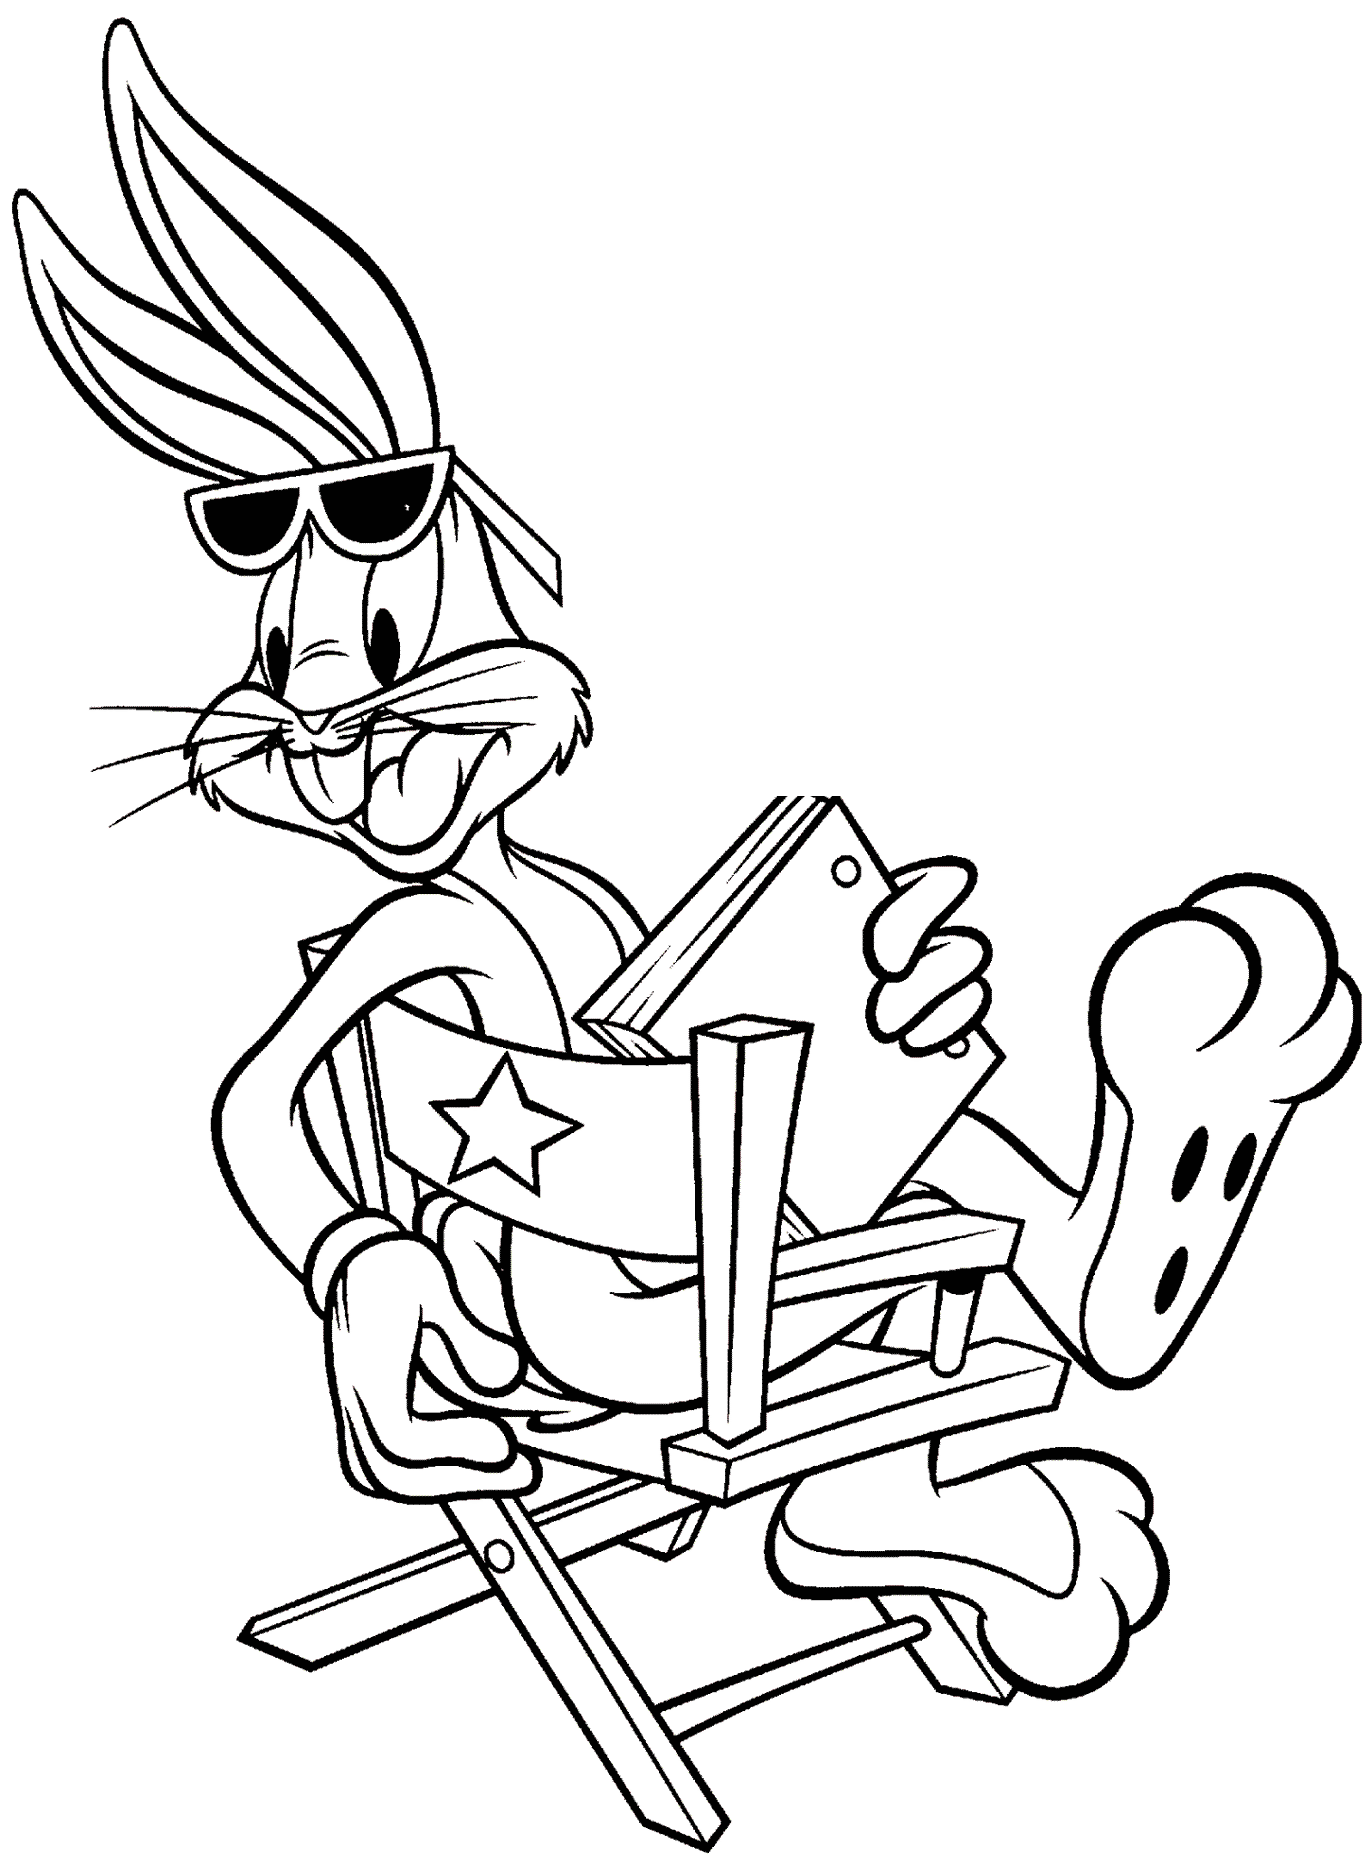 15 Disegni di Bugs Bunny da colorare